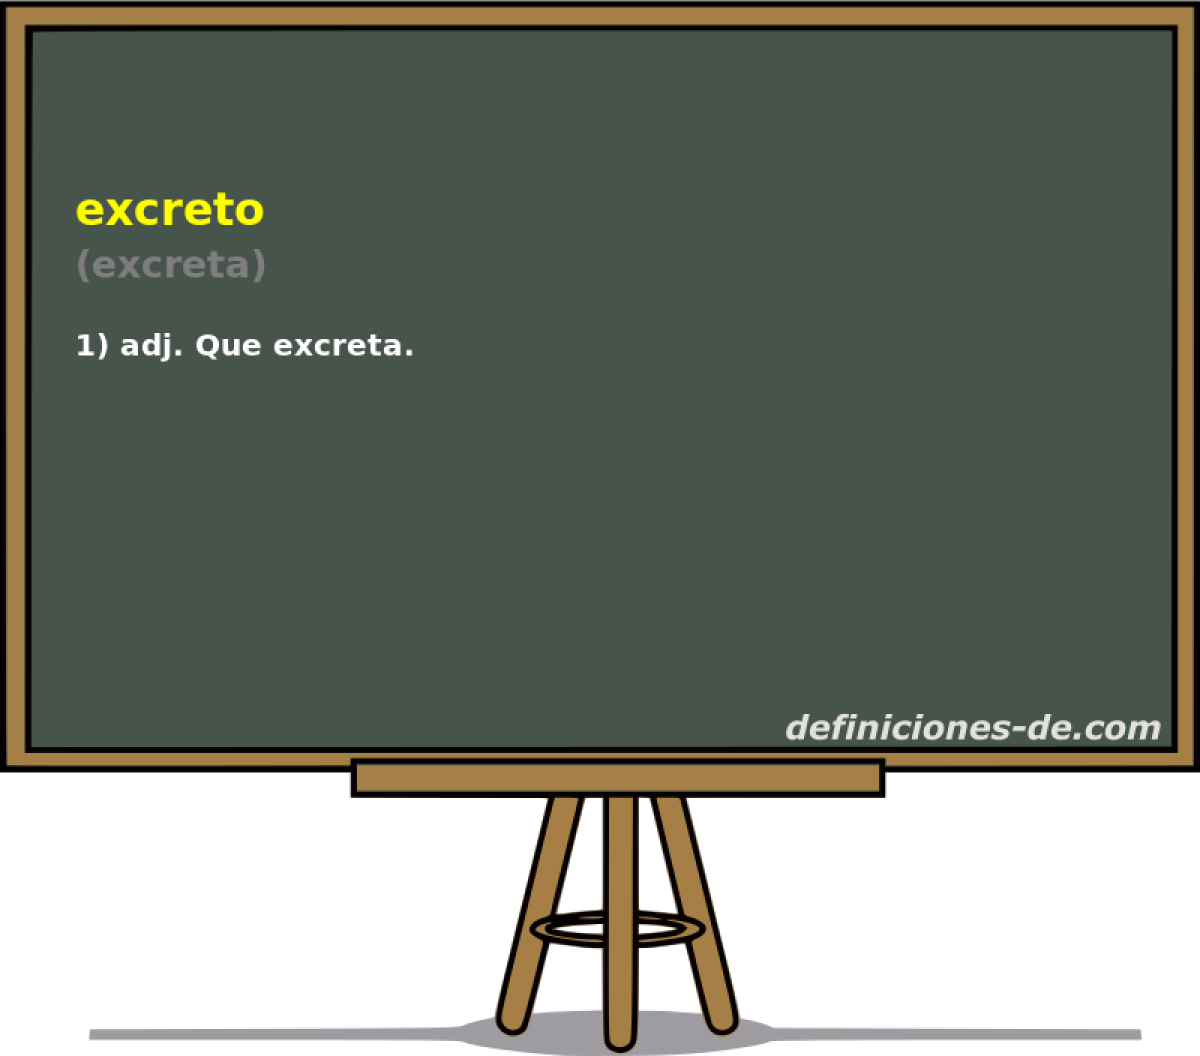 excreto (excreta)